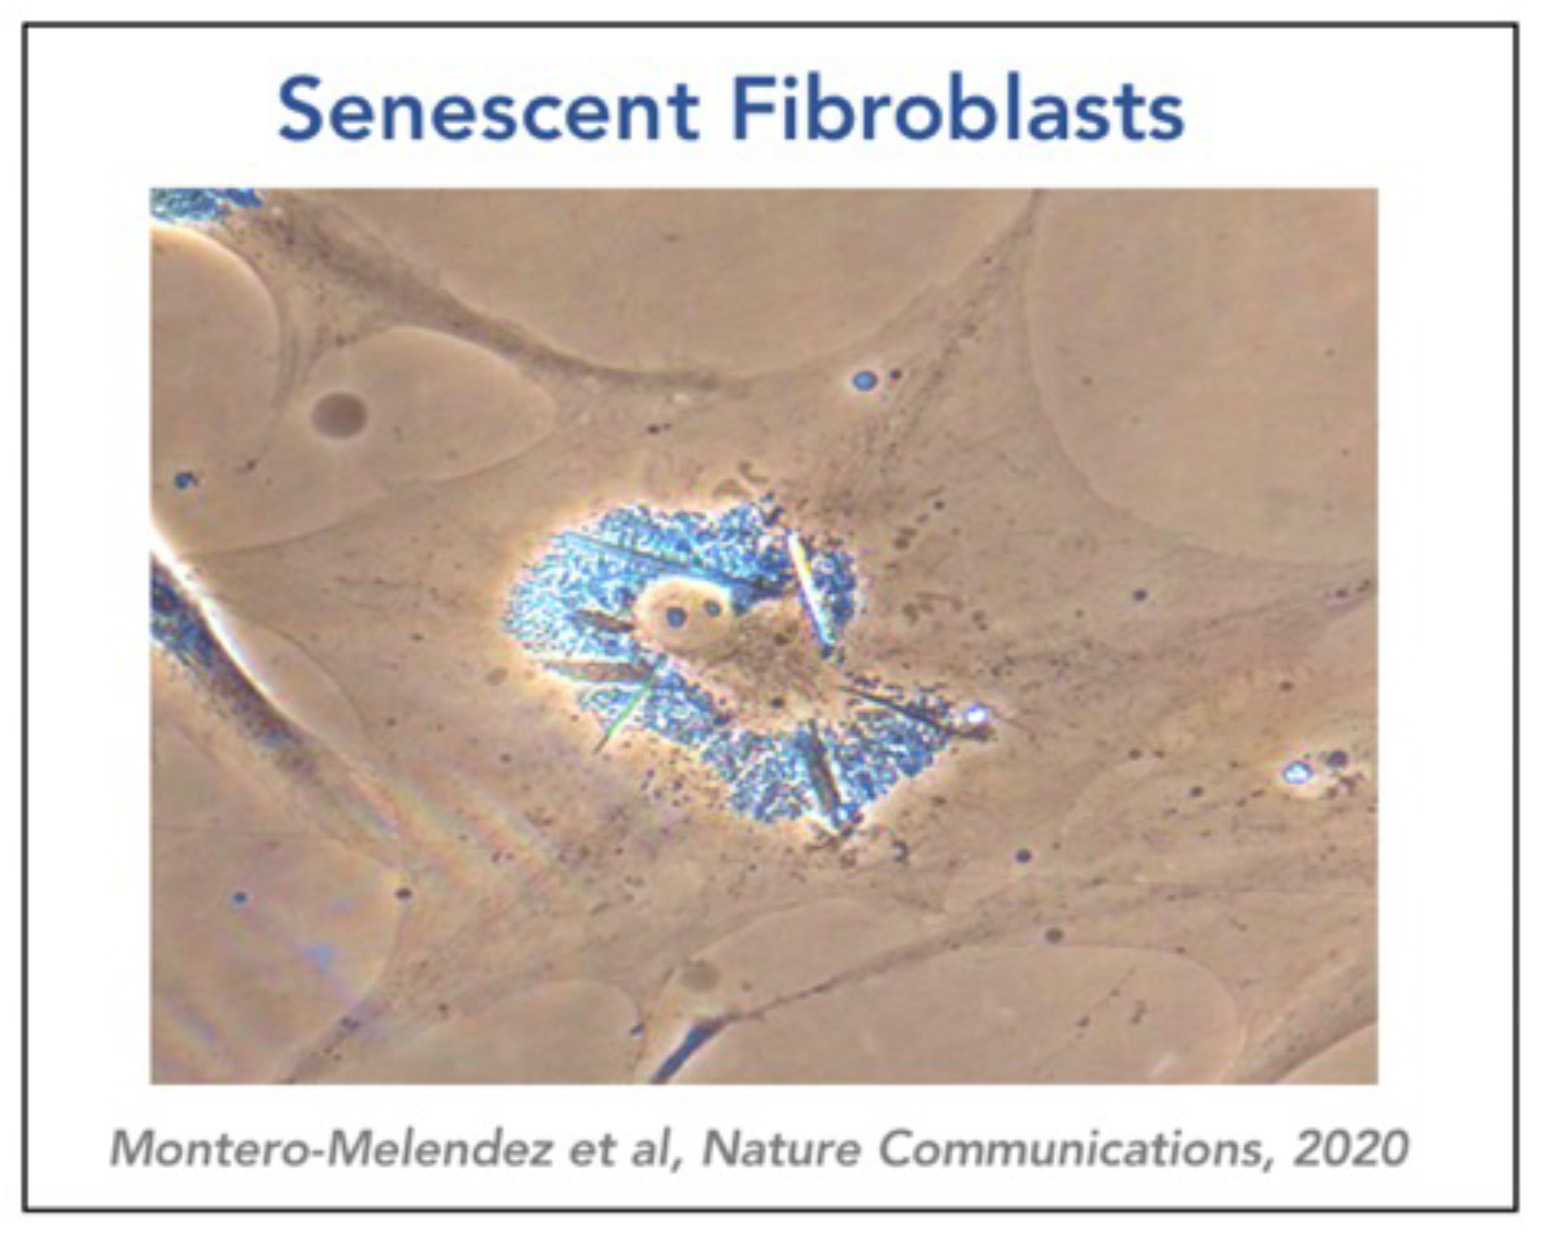 Senescence Fibroblasts